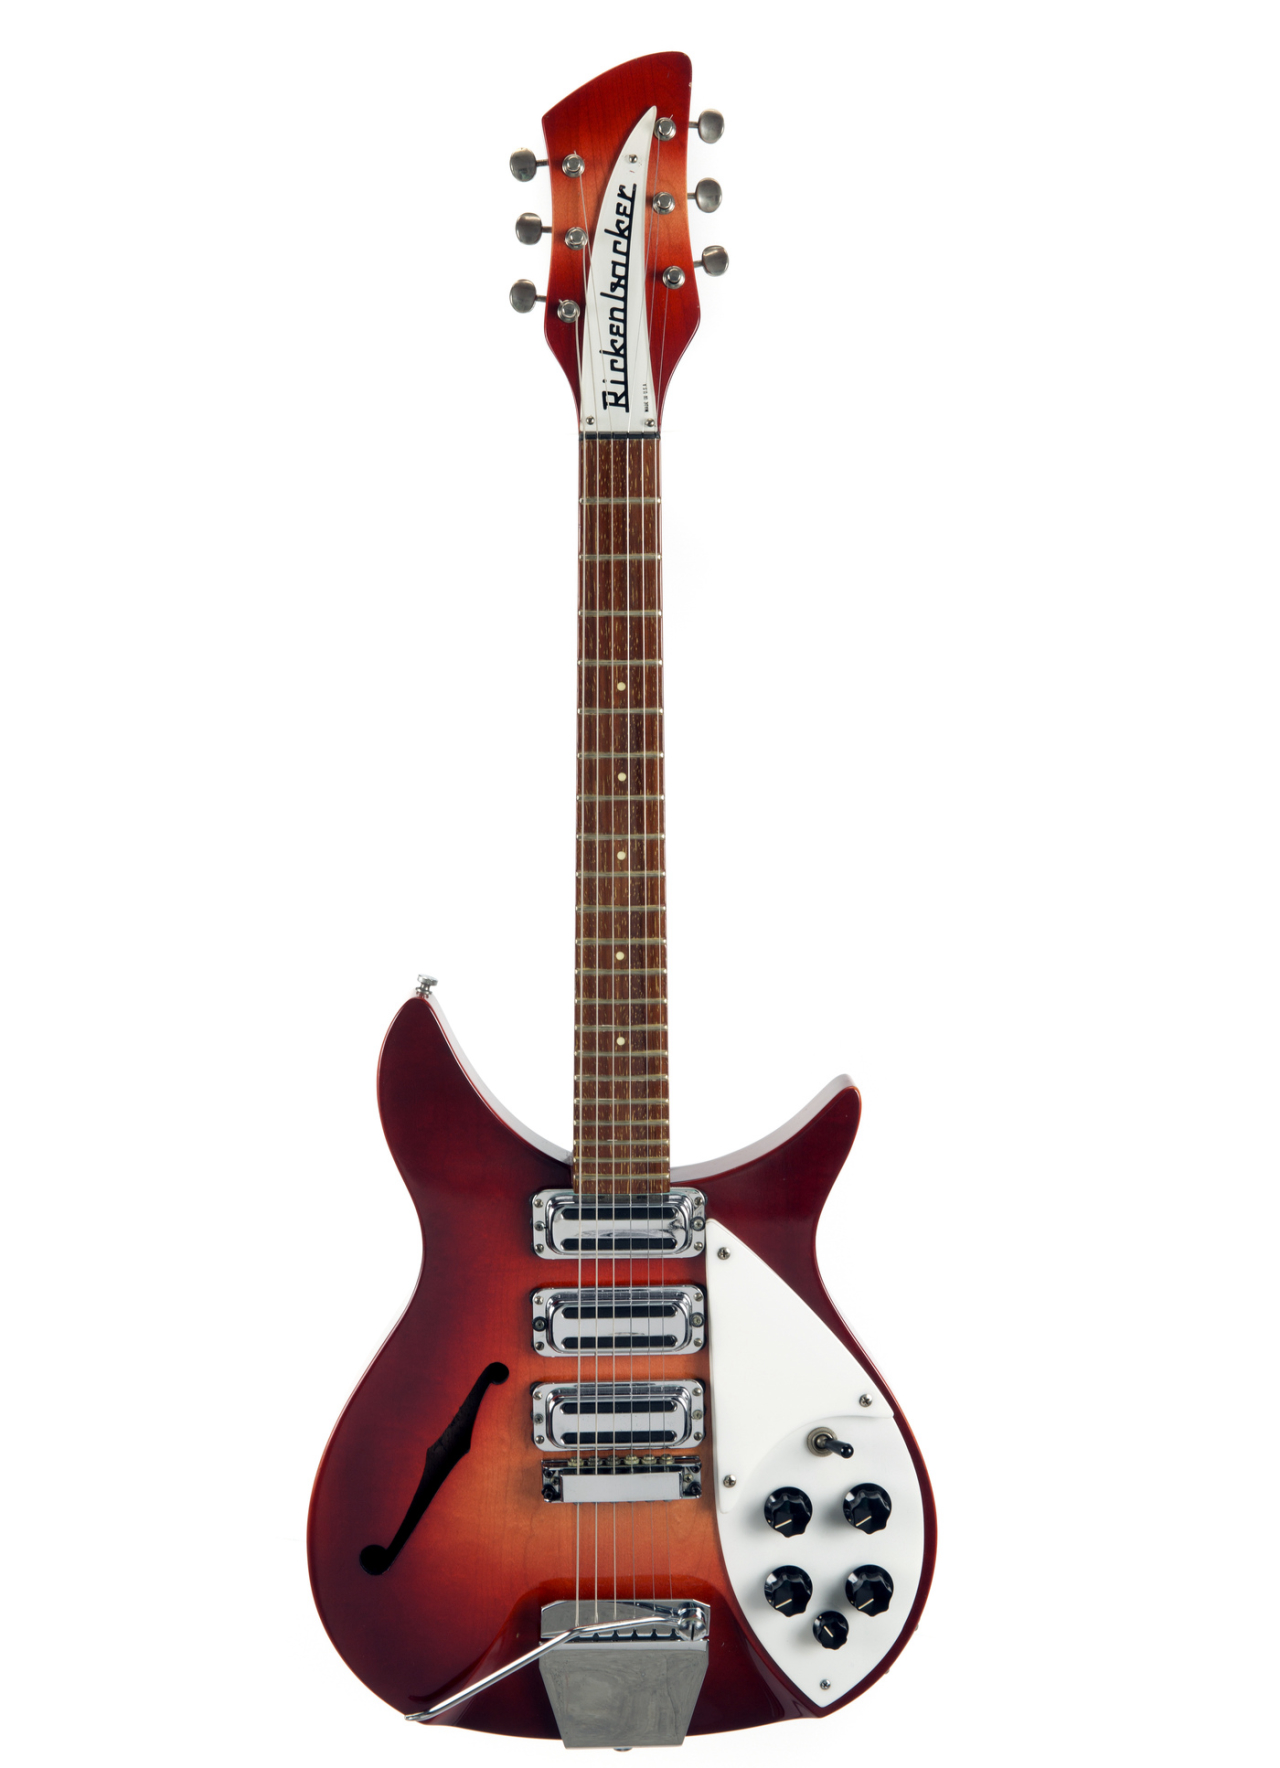 Guitarra Rose-Morris Rickenbacker de 1964, apelidada de "The Beatle Backer". Era propriedade de John Lennon e mais tarde foi dada a Ringo Starr.<br>Foto: Julien's Auction / Divulgação